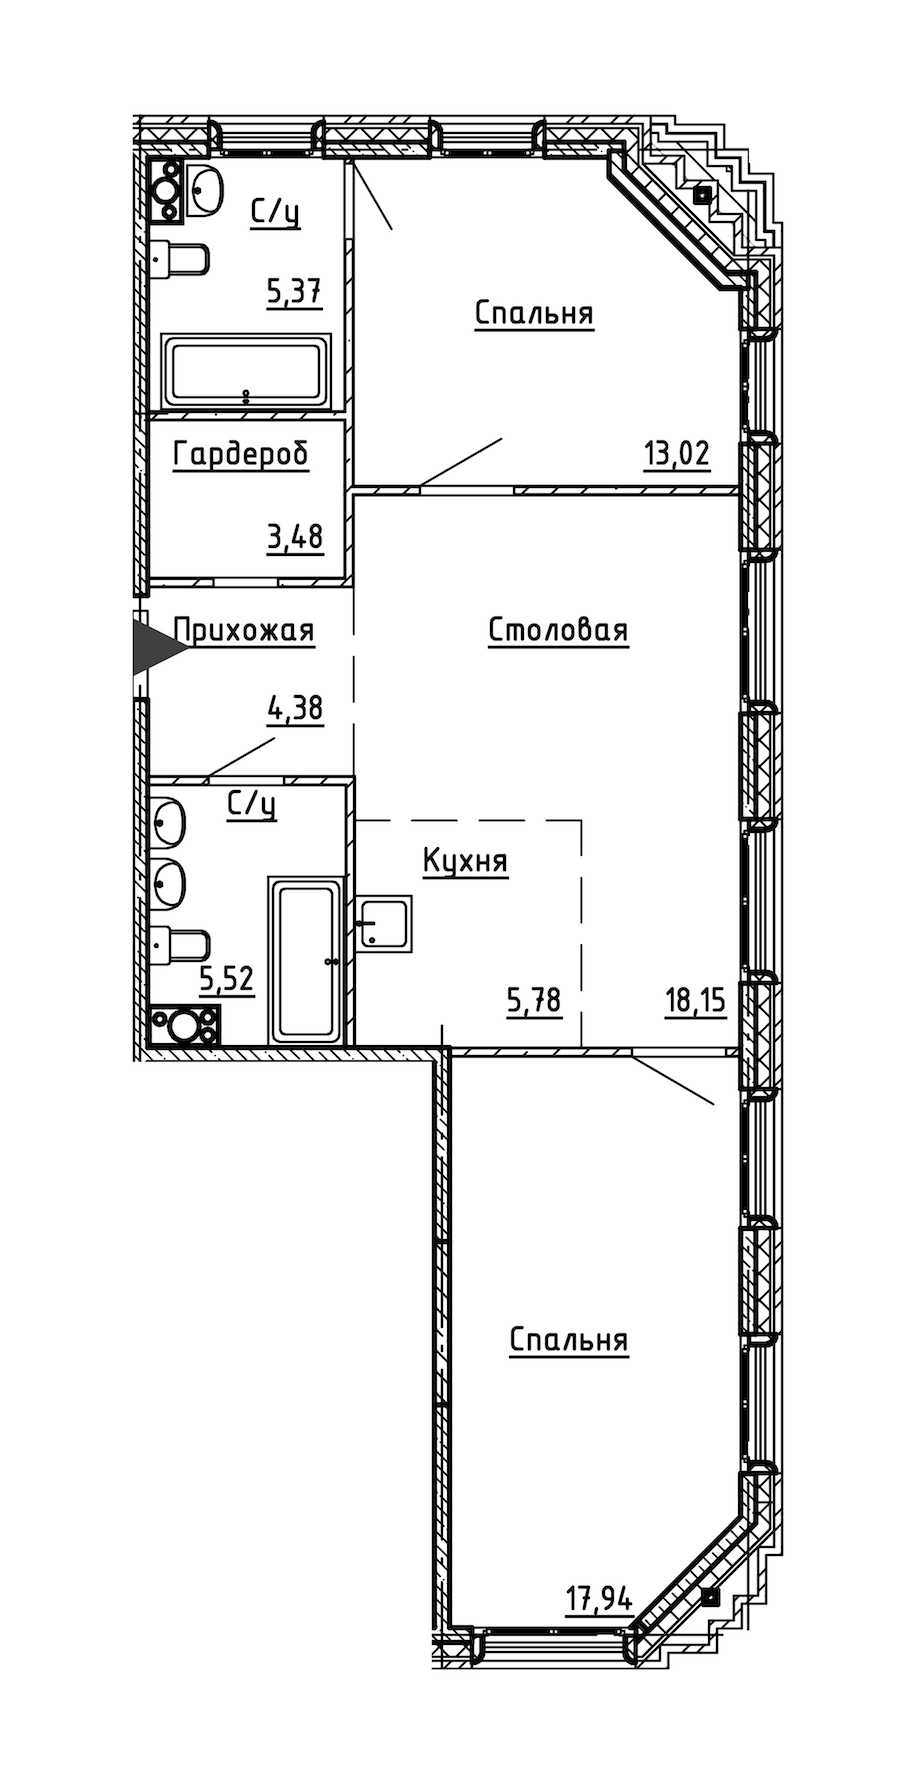 Двухкомнатная квартира в : площадь 73.64 м2 , этаж: 6 – купить в Санкт-Петербурге